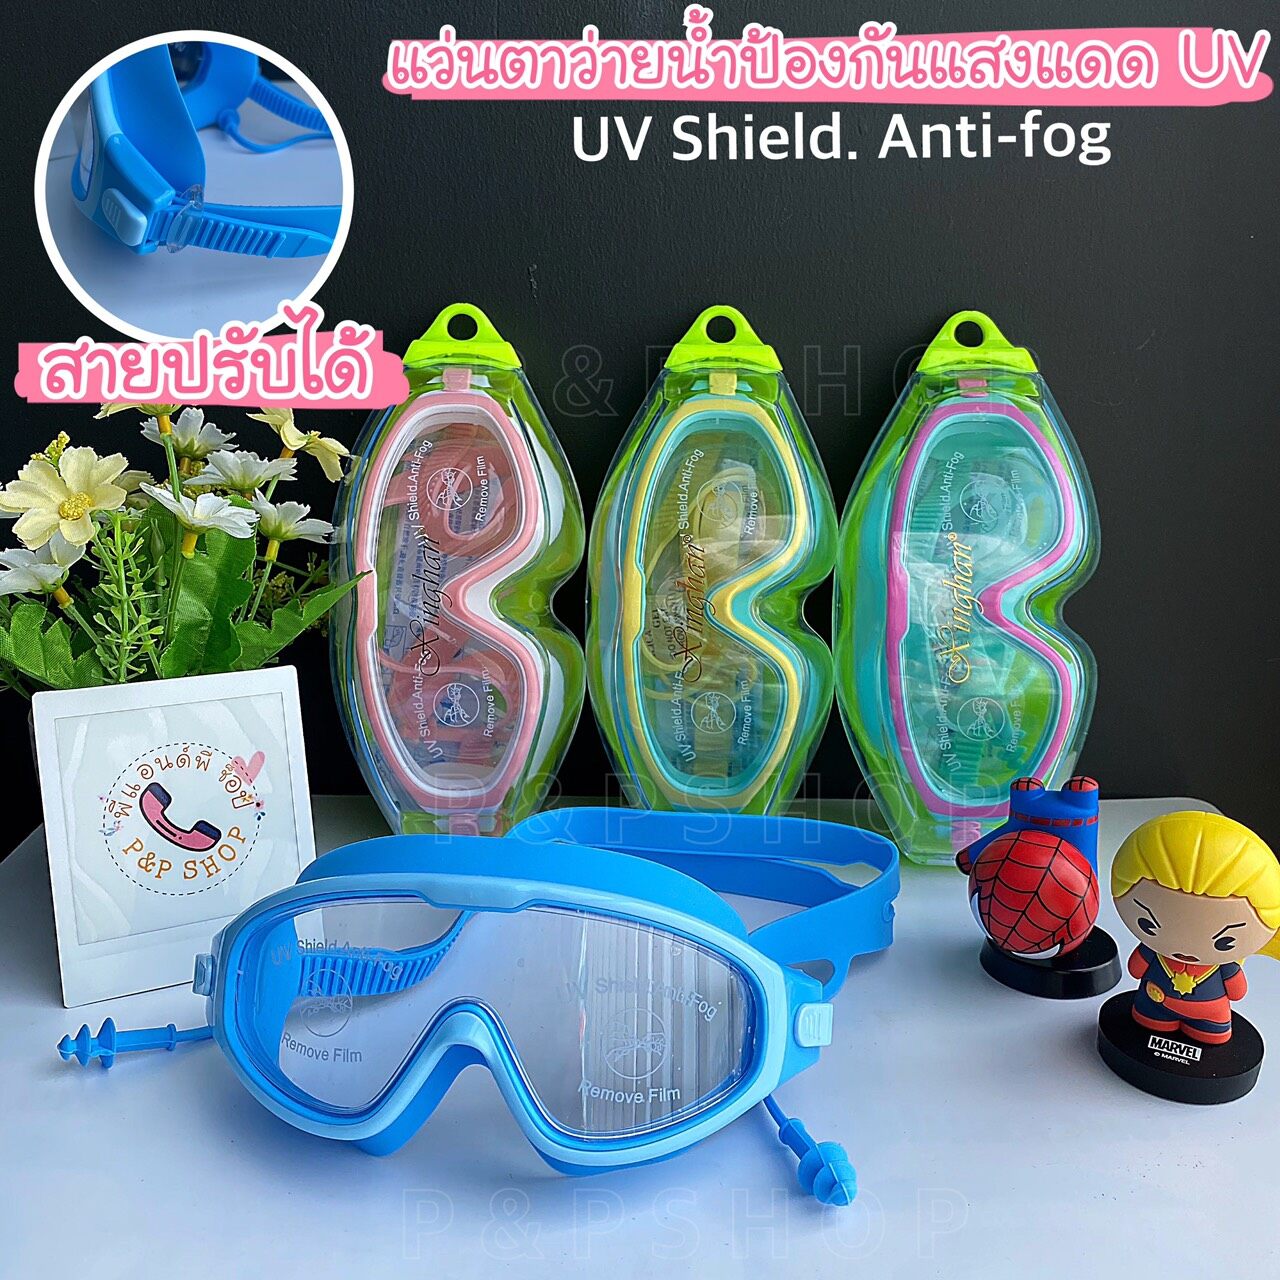 แว่นตาว่ายน้ำเด็กสีสันสดใส ช่วยป้องกันแสงแดด UV  ไม่เป็นฝ้าที่หน้ากระจก สายรัดปรับระดับได้ พร้อมที่อุดหู